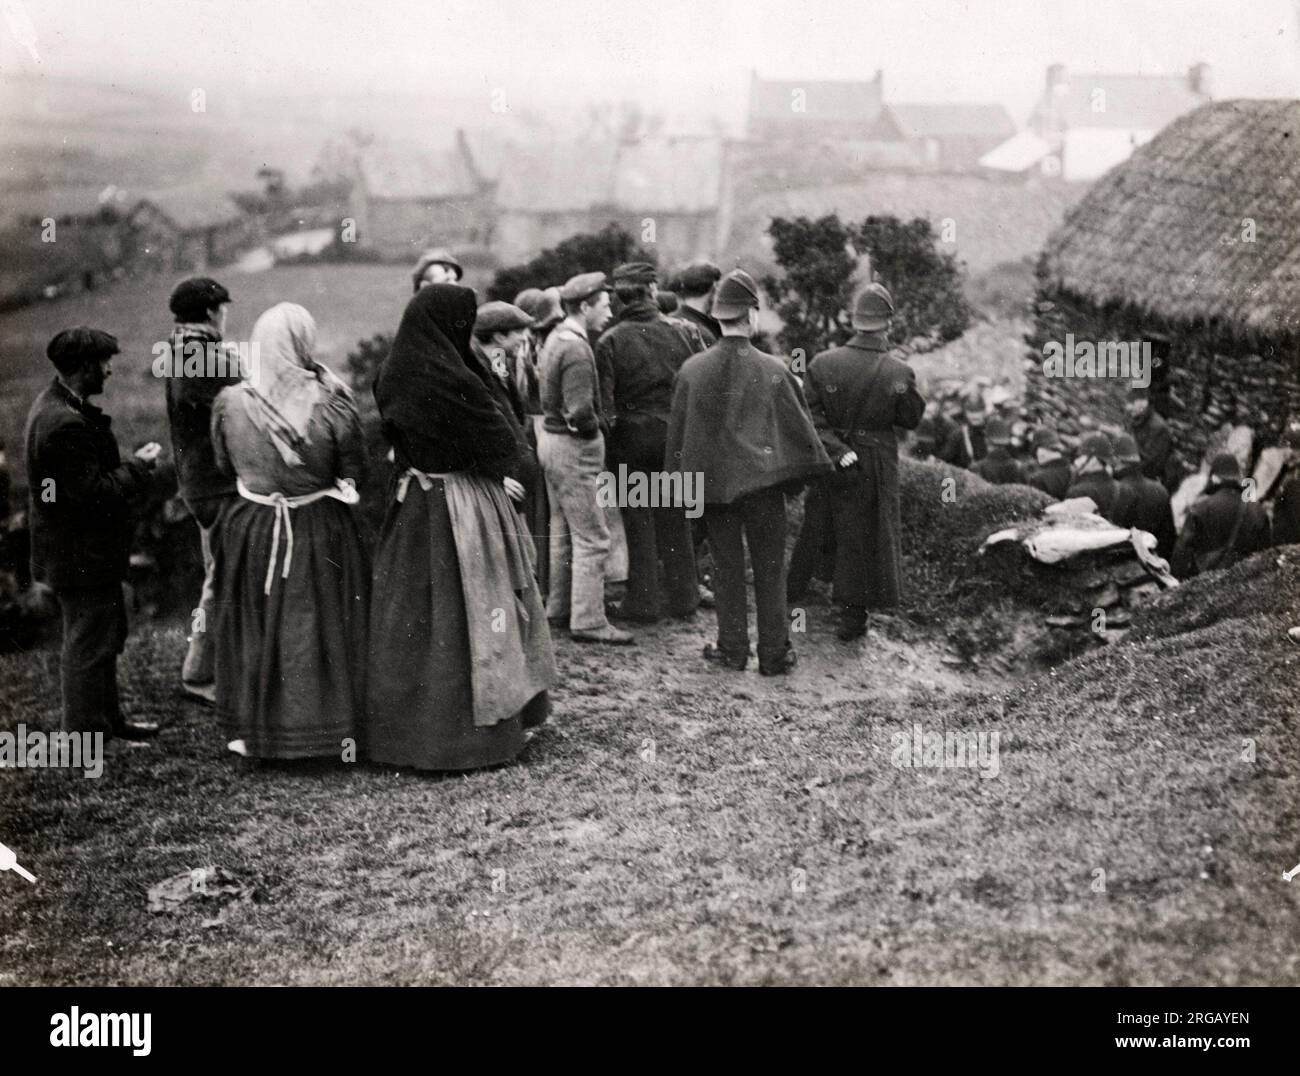 Seltenes Bild einer Räumung durch die Royal Irish Constabulary, nicht datiert, aber wahrscheinlich um die 1890, später gedruckt. Stockfoto